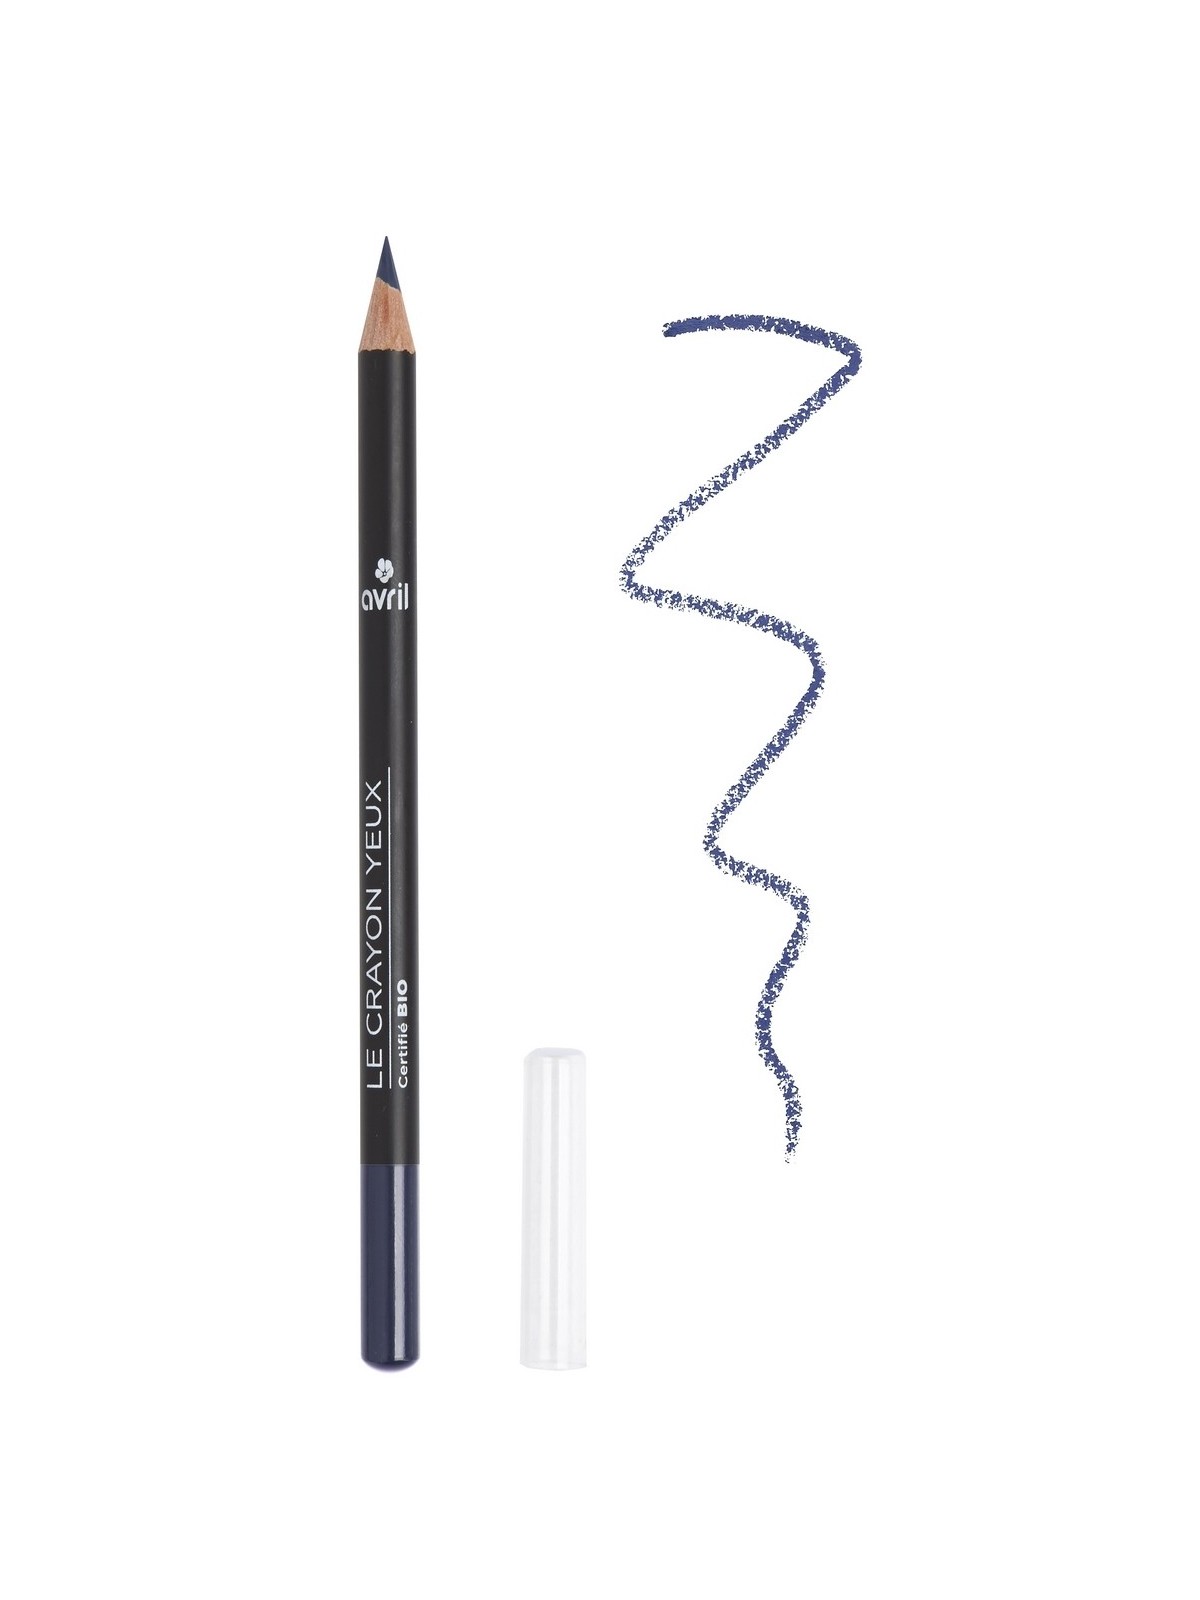 Crayon pour les yeux bio et naturel teinte Bleu Nuit | Tilleulmenthe Boutique de mode femme en ligne